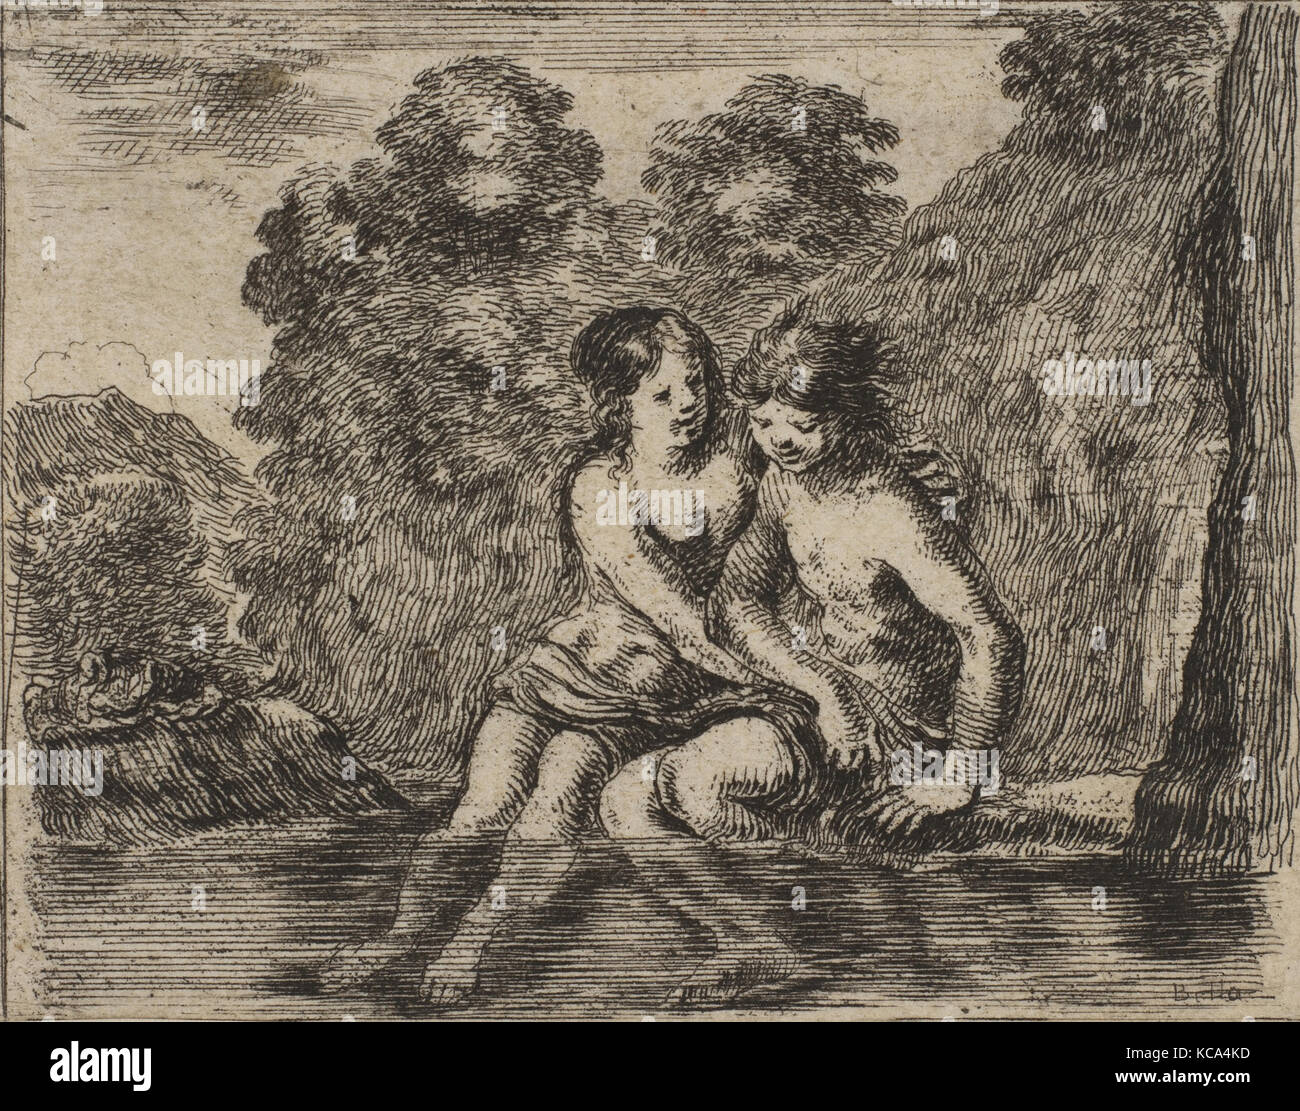 Salmacis und Hermaphrodit, vom "Spiel der Mythologie' (Jeu de la Mythologie), von Stefano Della Bella, 1644 eingraviert Stockfoto